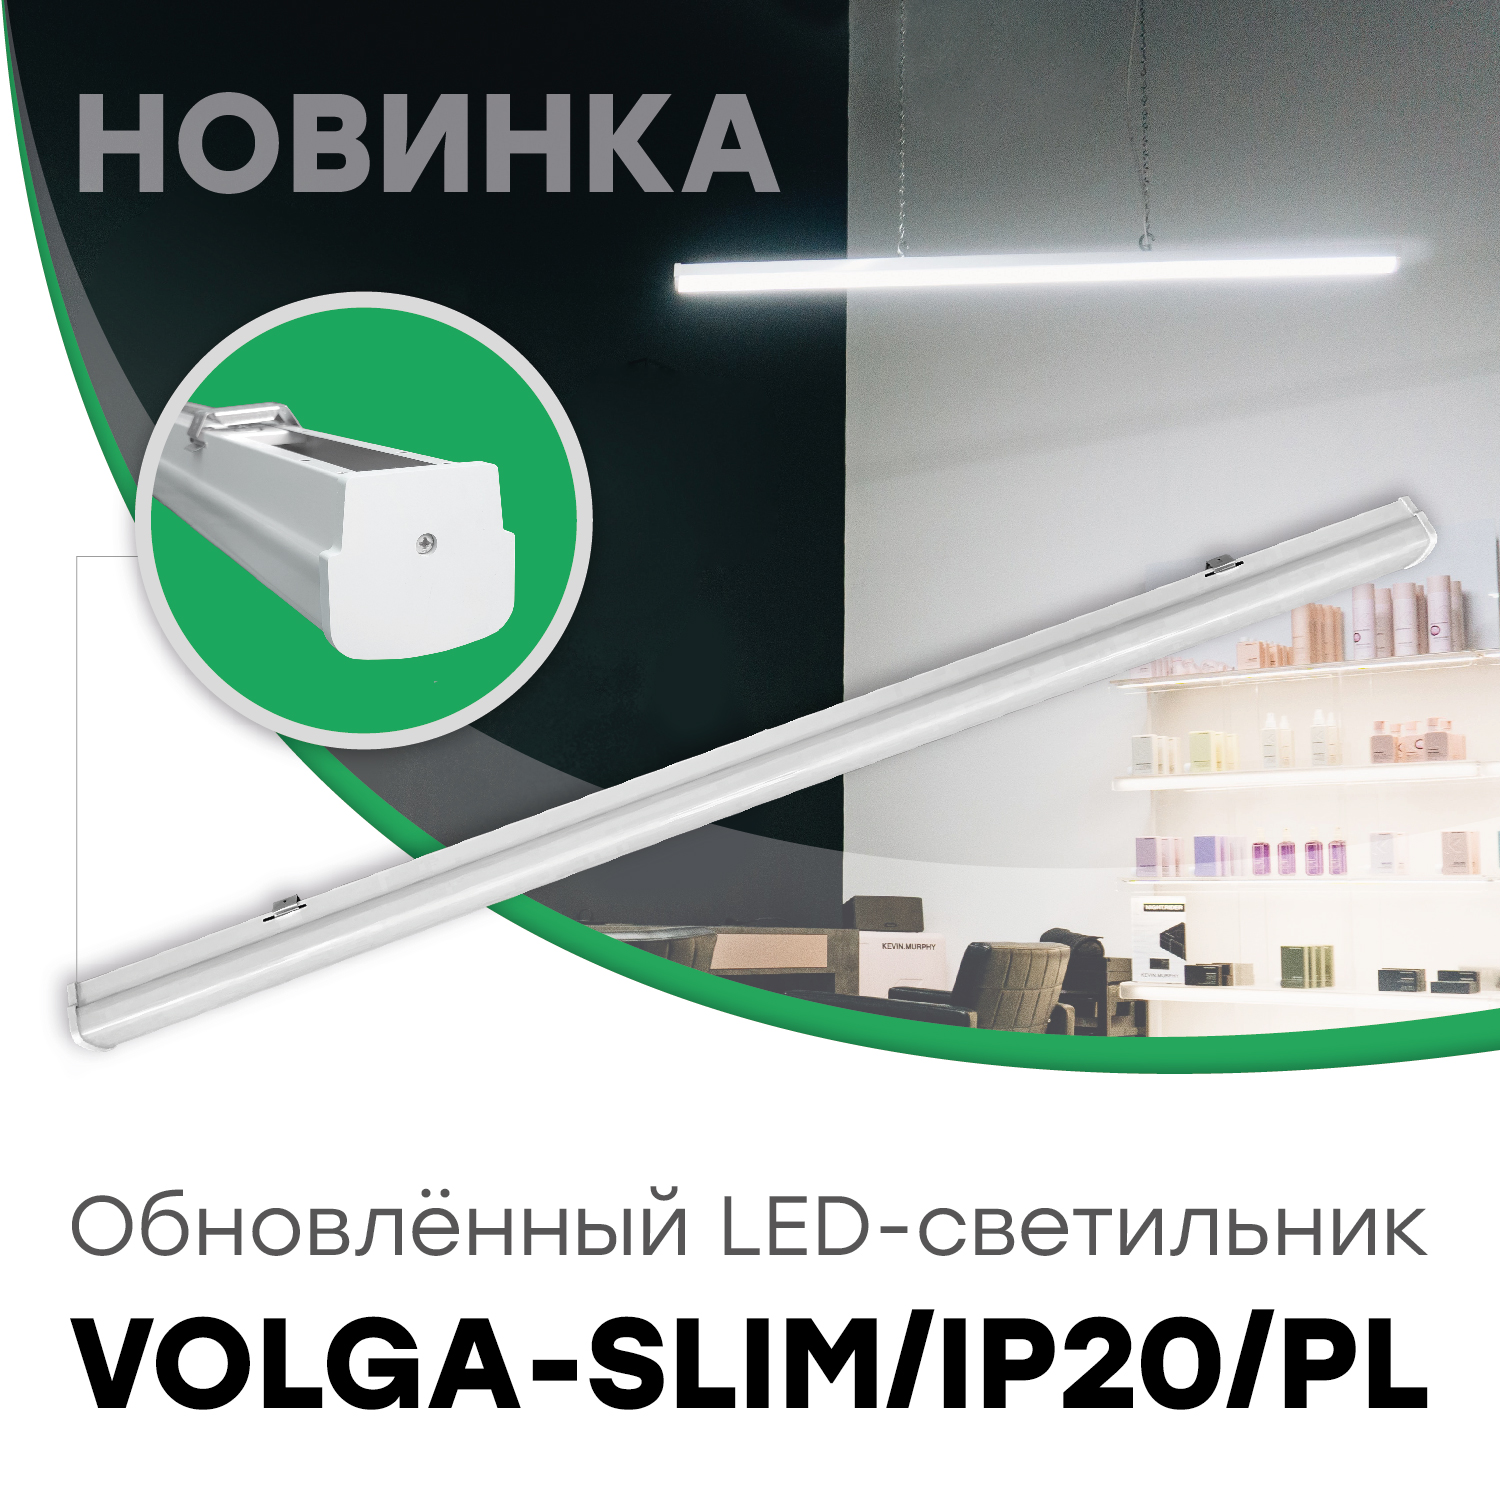 Обновлённый LED-светильник VOLGA-SLIM/IP20/PL